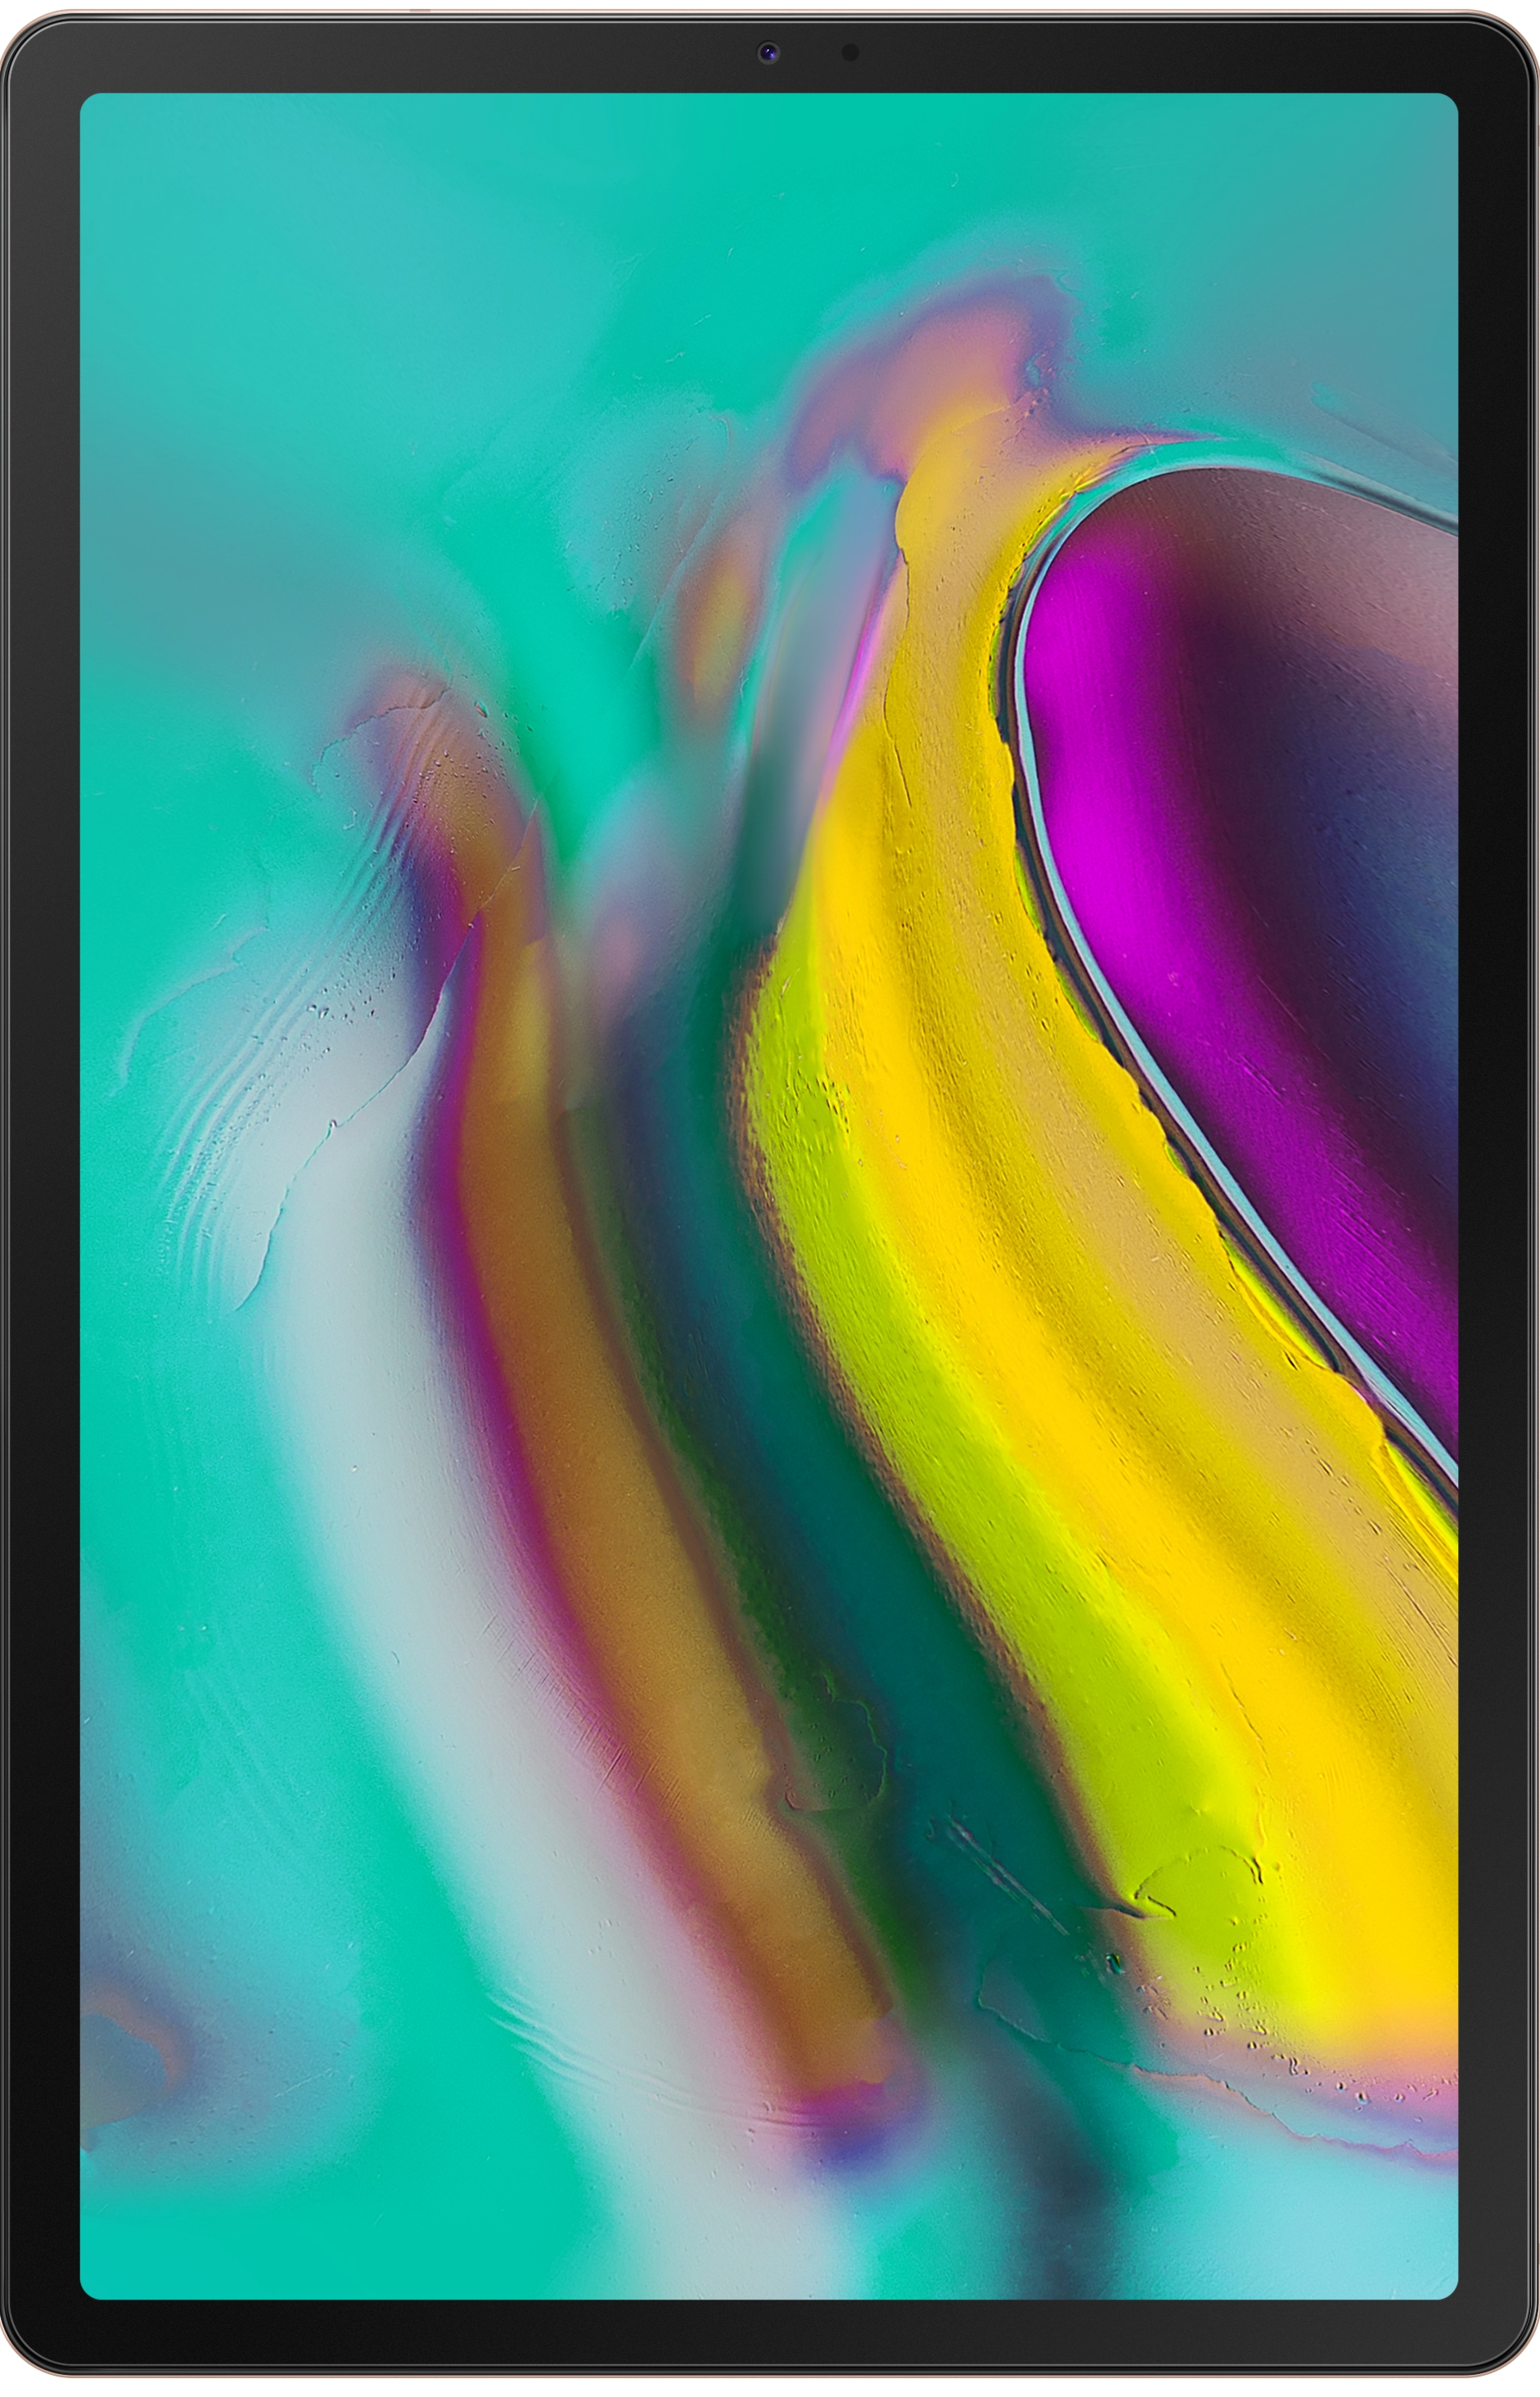 Samsung Galaxy Tab A 10.1 (2019) announced